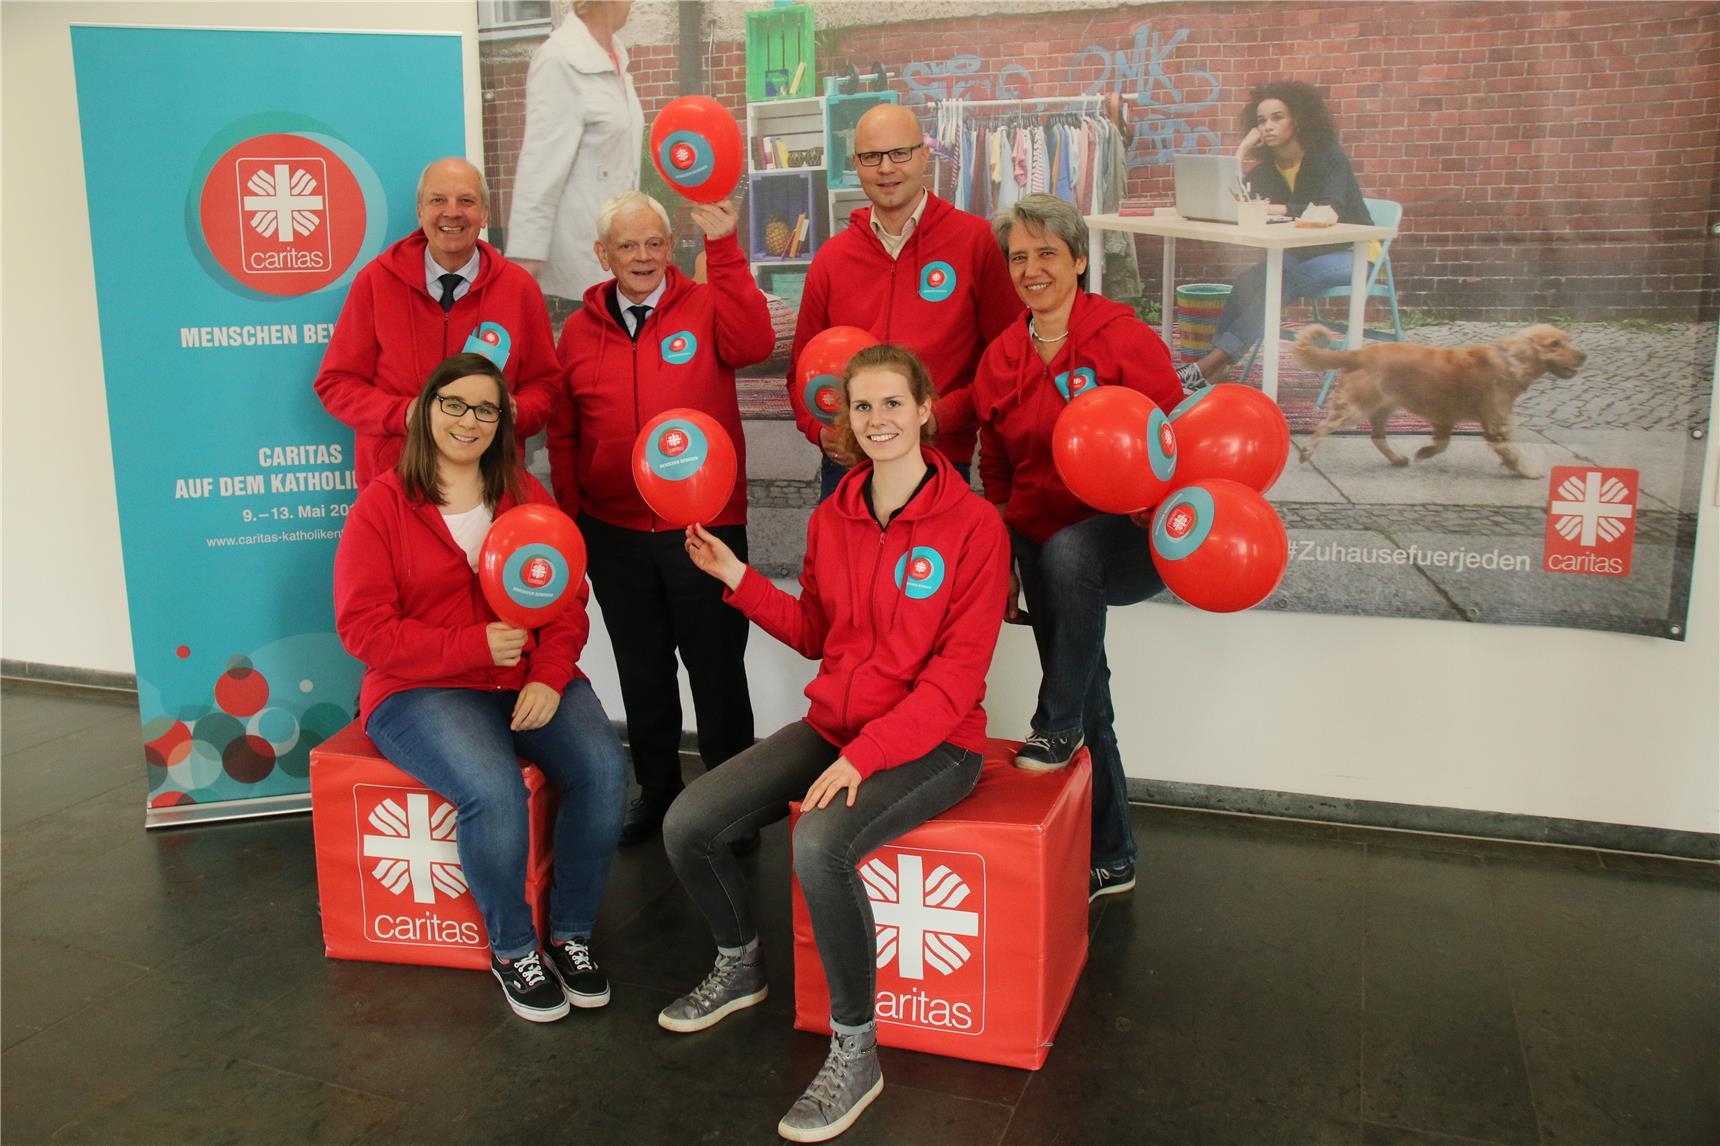 Das 6-köpfige Vorbereitungsteam des Caritasverbandes für die Diözese Münster hat rote Caritas-Jacken an und hält rote Caritas-Luftballons hoch. 